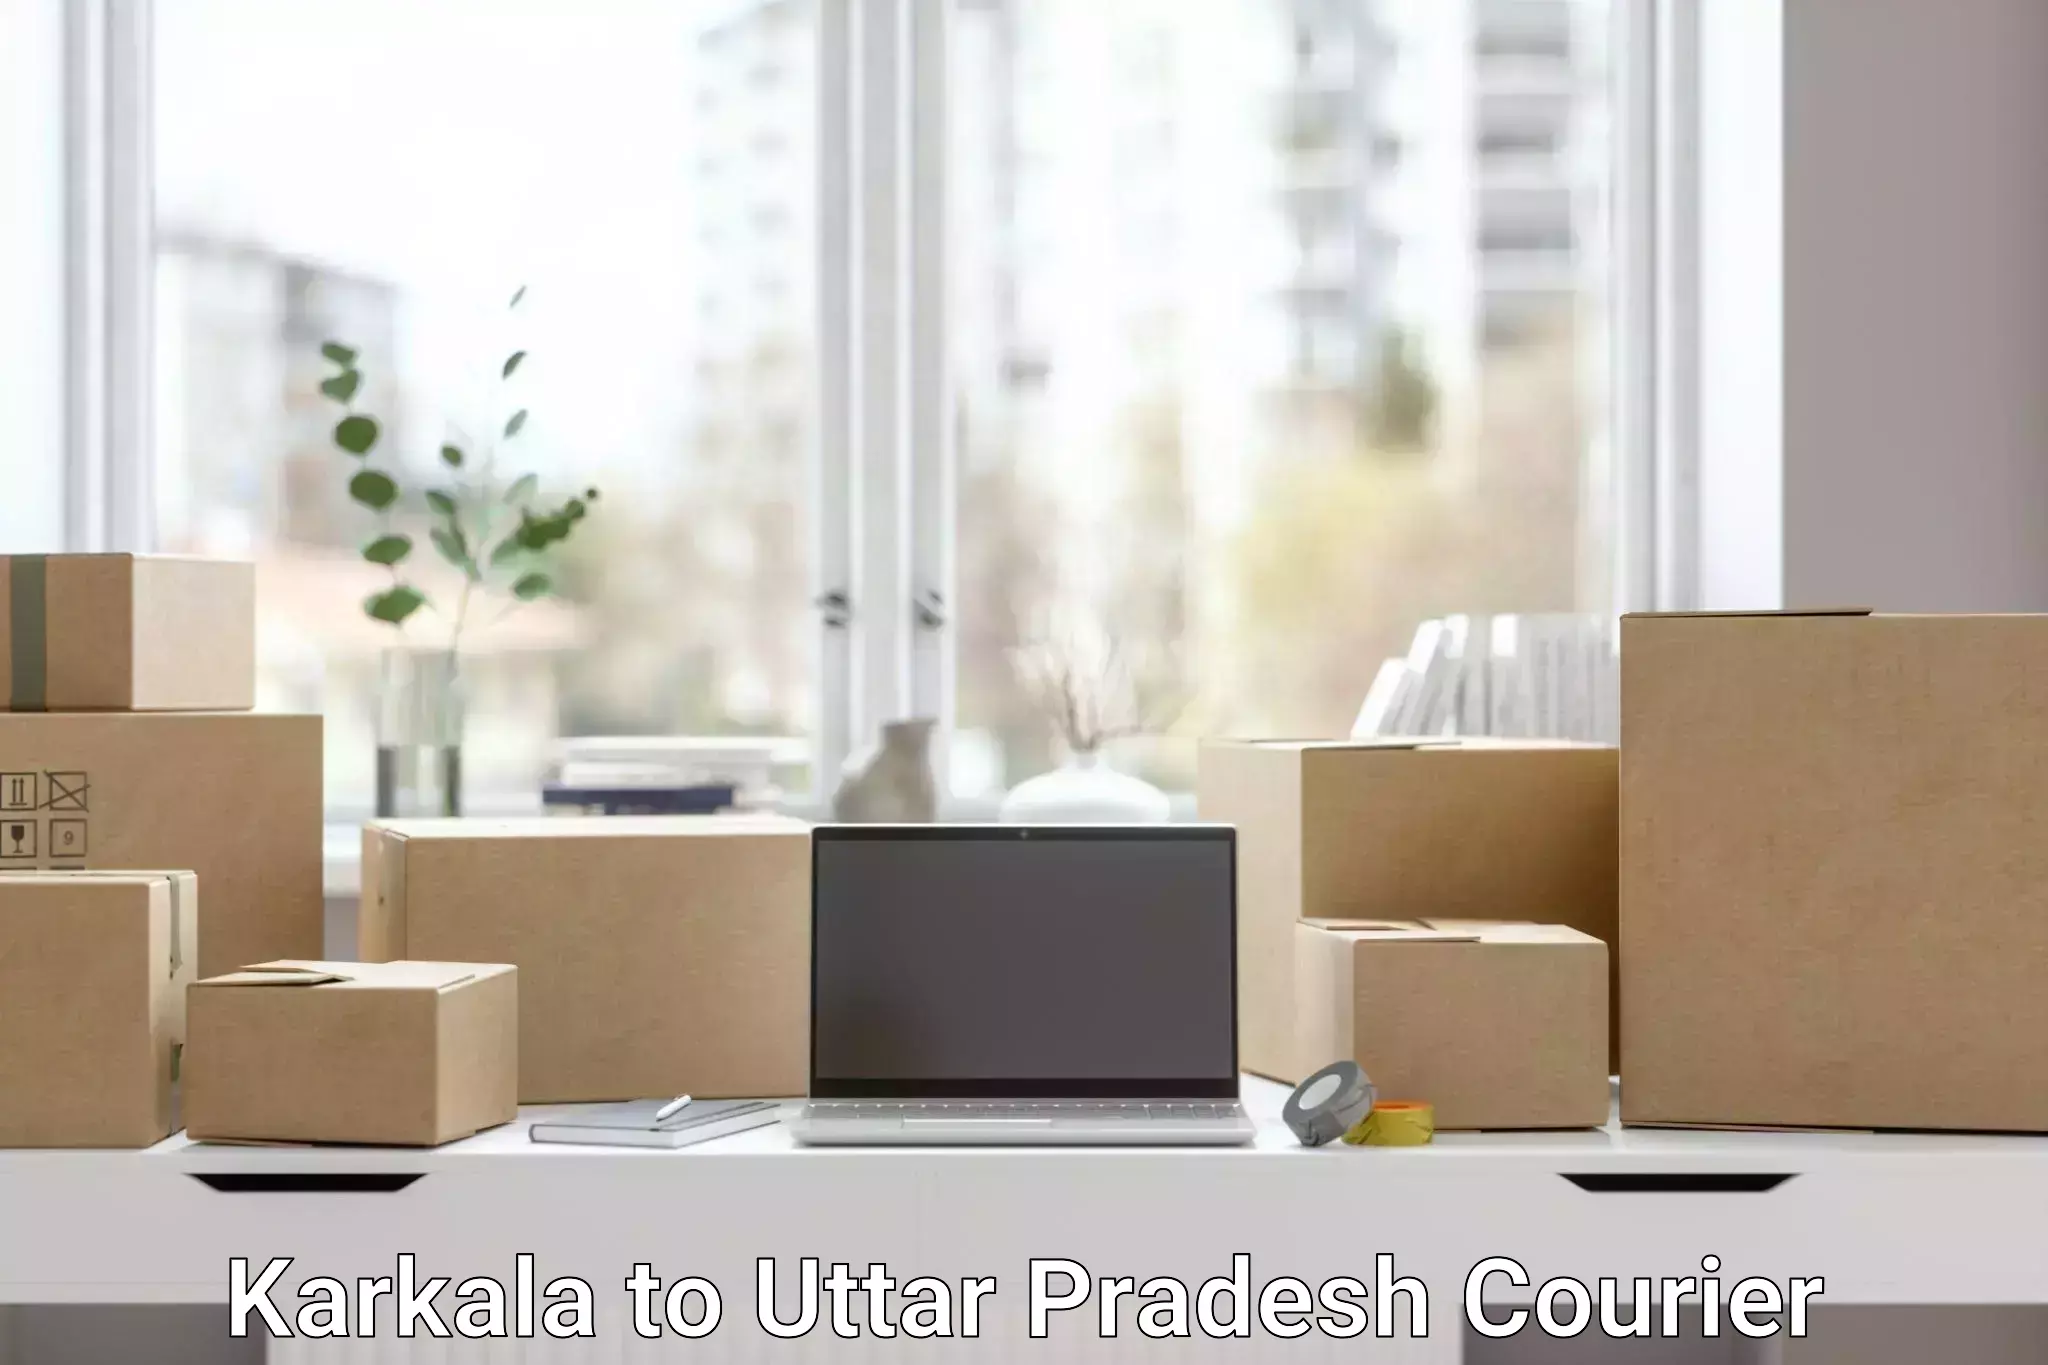 Express package transport Karkala to Uttar Pradesh